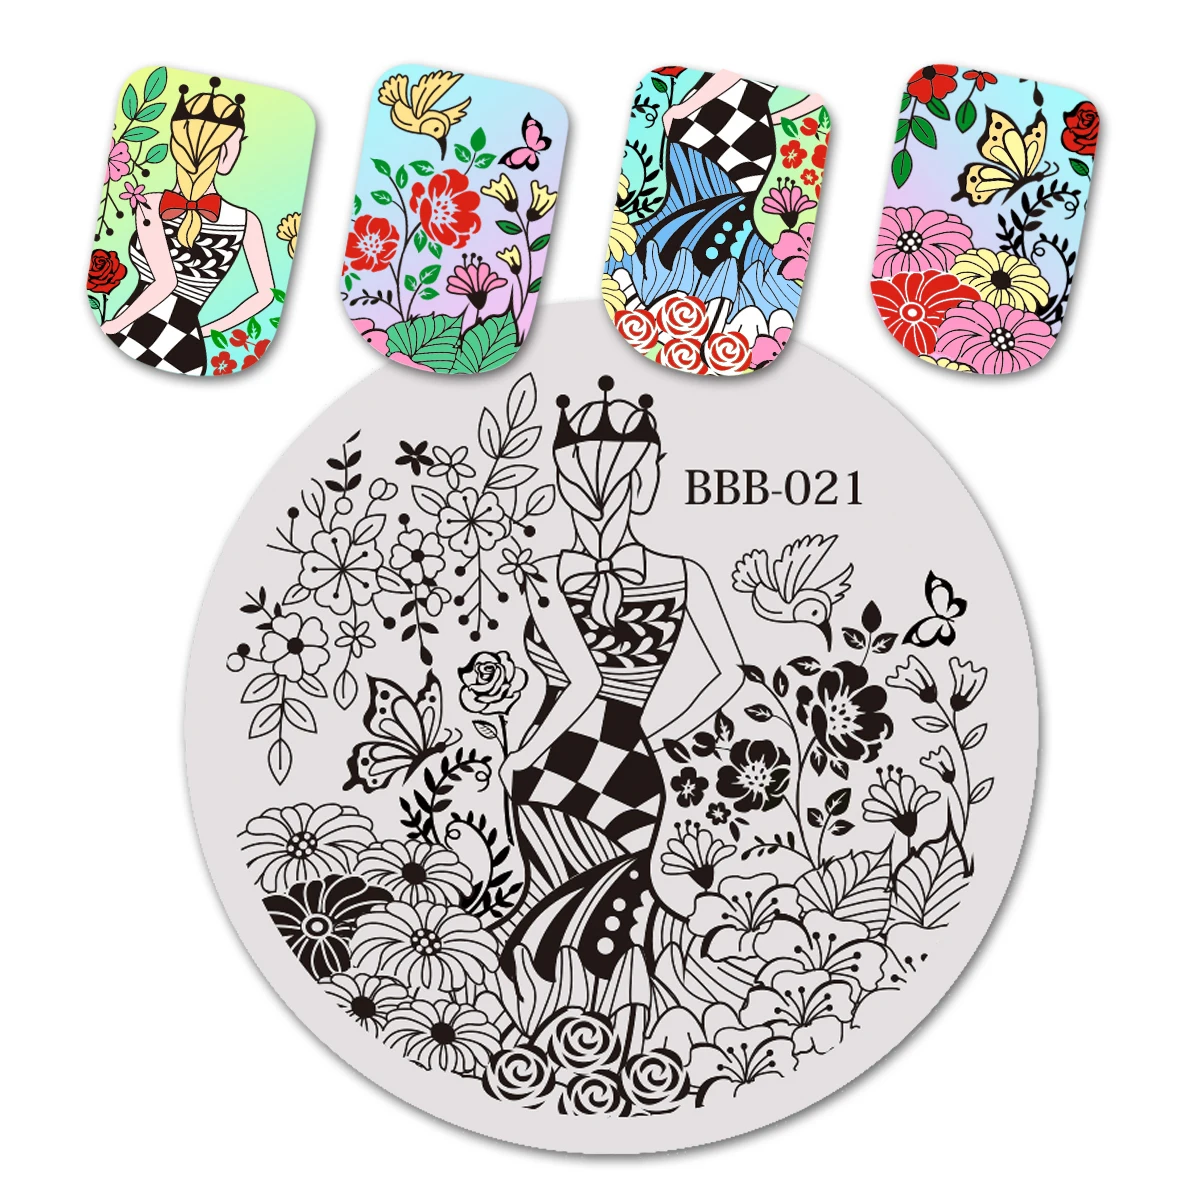 BeautyBigBang 5,6*5,6 см штамповка для ногтей фестиваль пасхальное яйцо и кролик дизайн ногтей штамп трафареты шаблонные штампы BBB-018